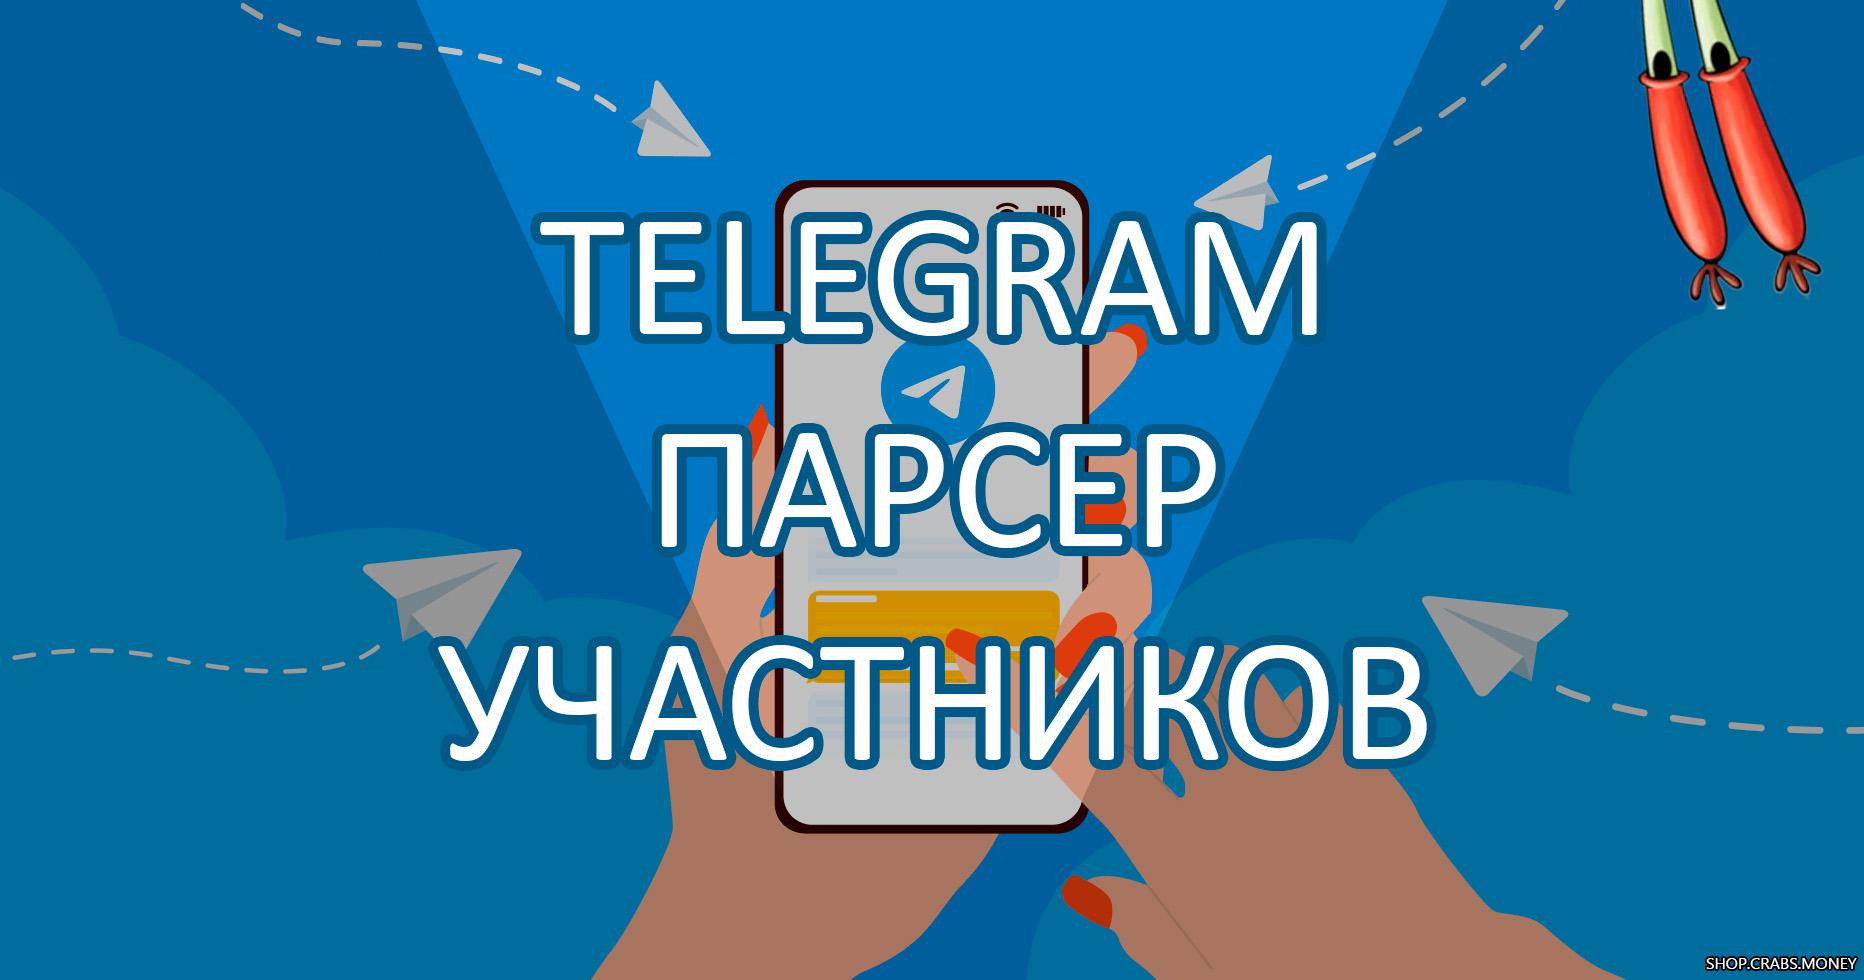 Telegram парсер username участников группы по сообщениям